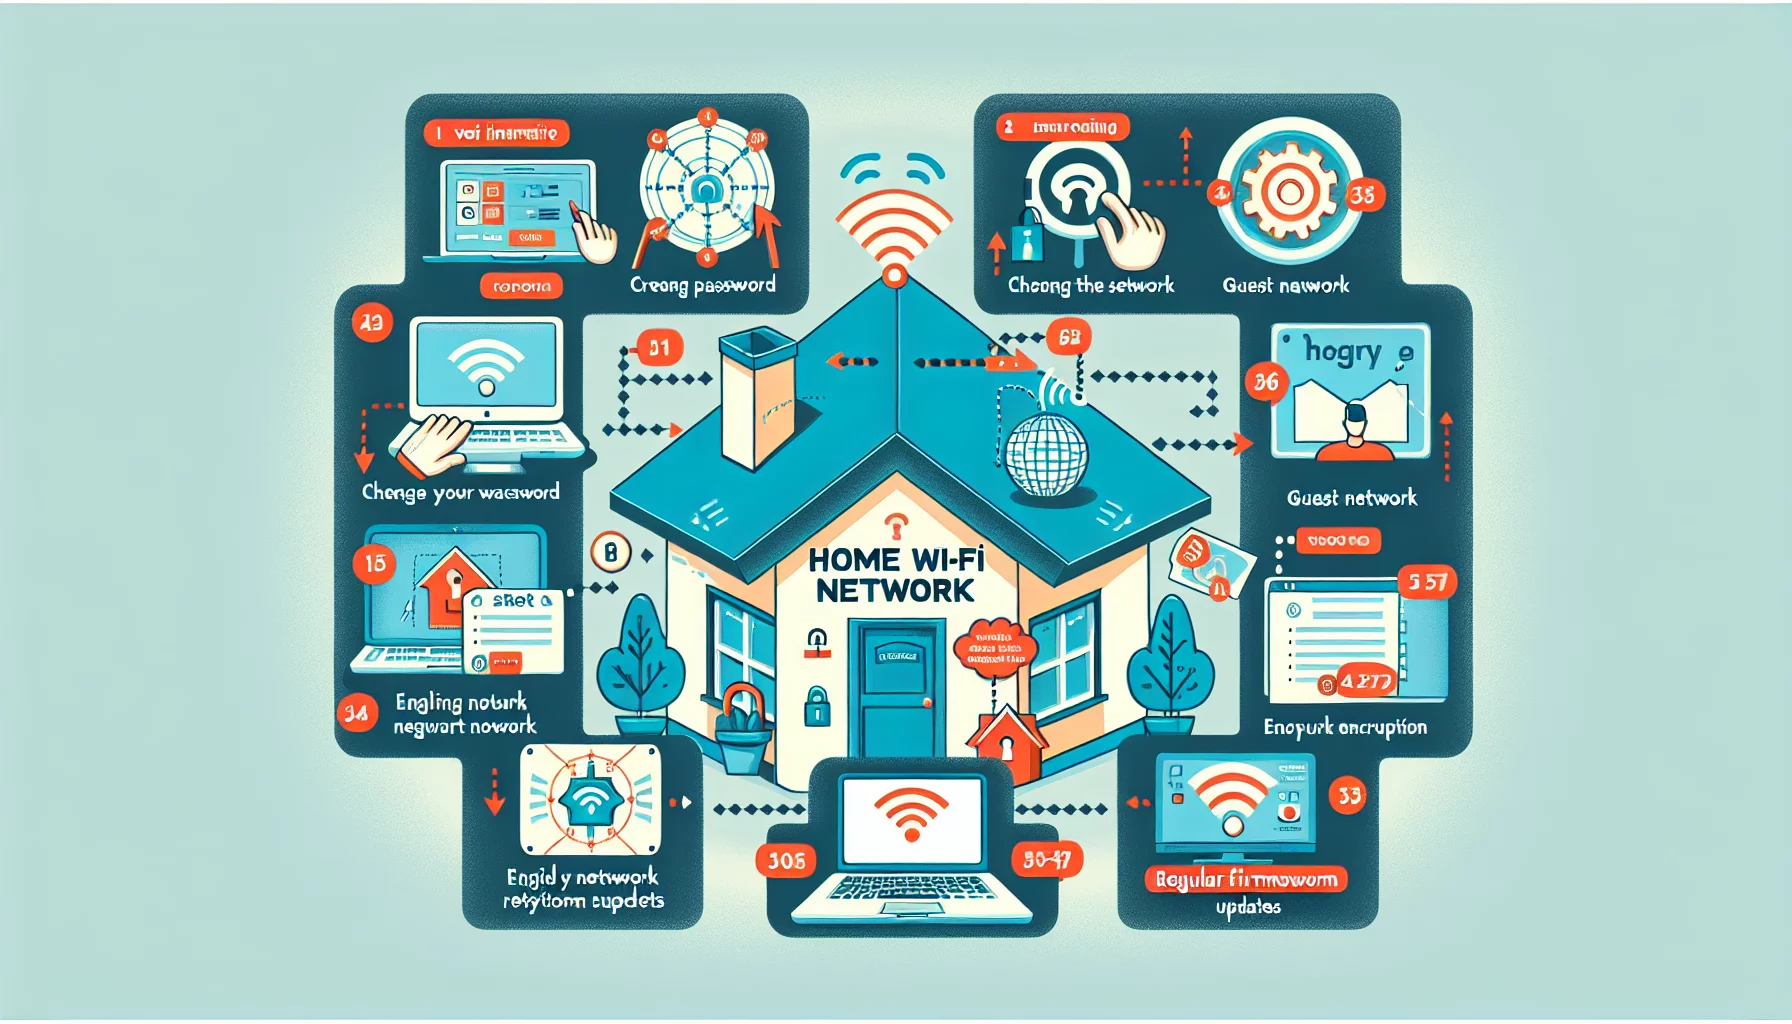 Comment faire pour sécuriser votre réseau Wi-Fi à la maison ?